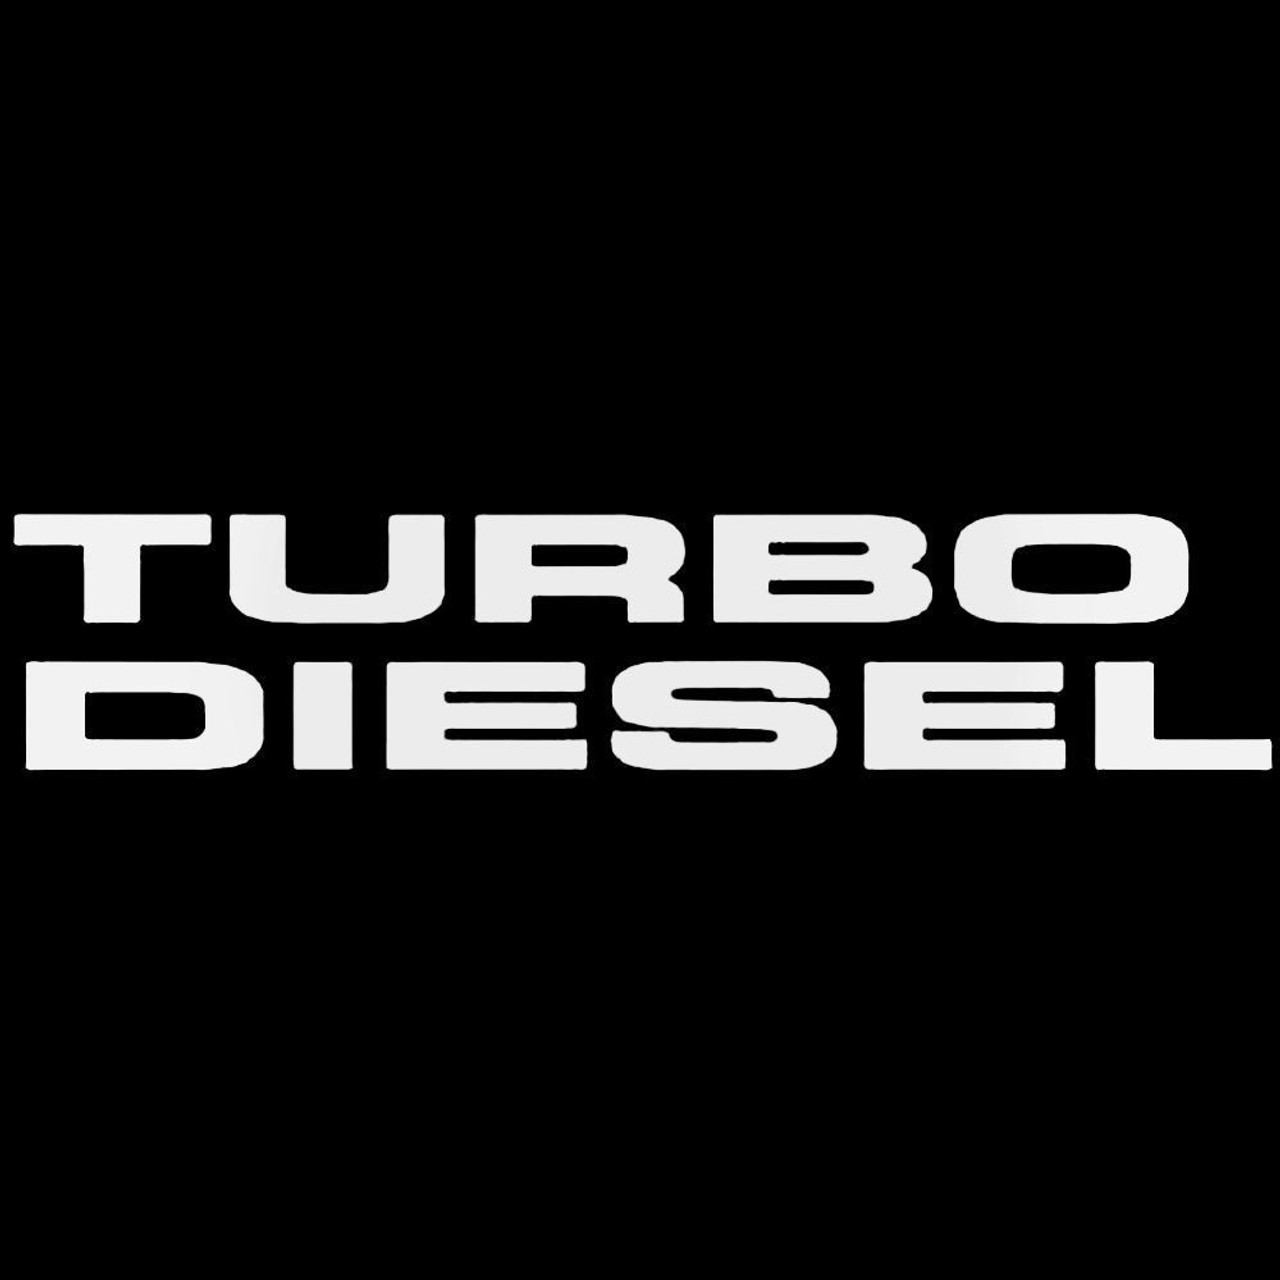 Diesel Inside | Sticker